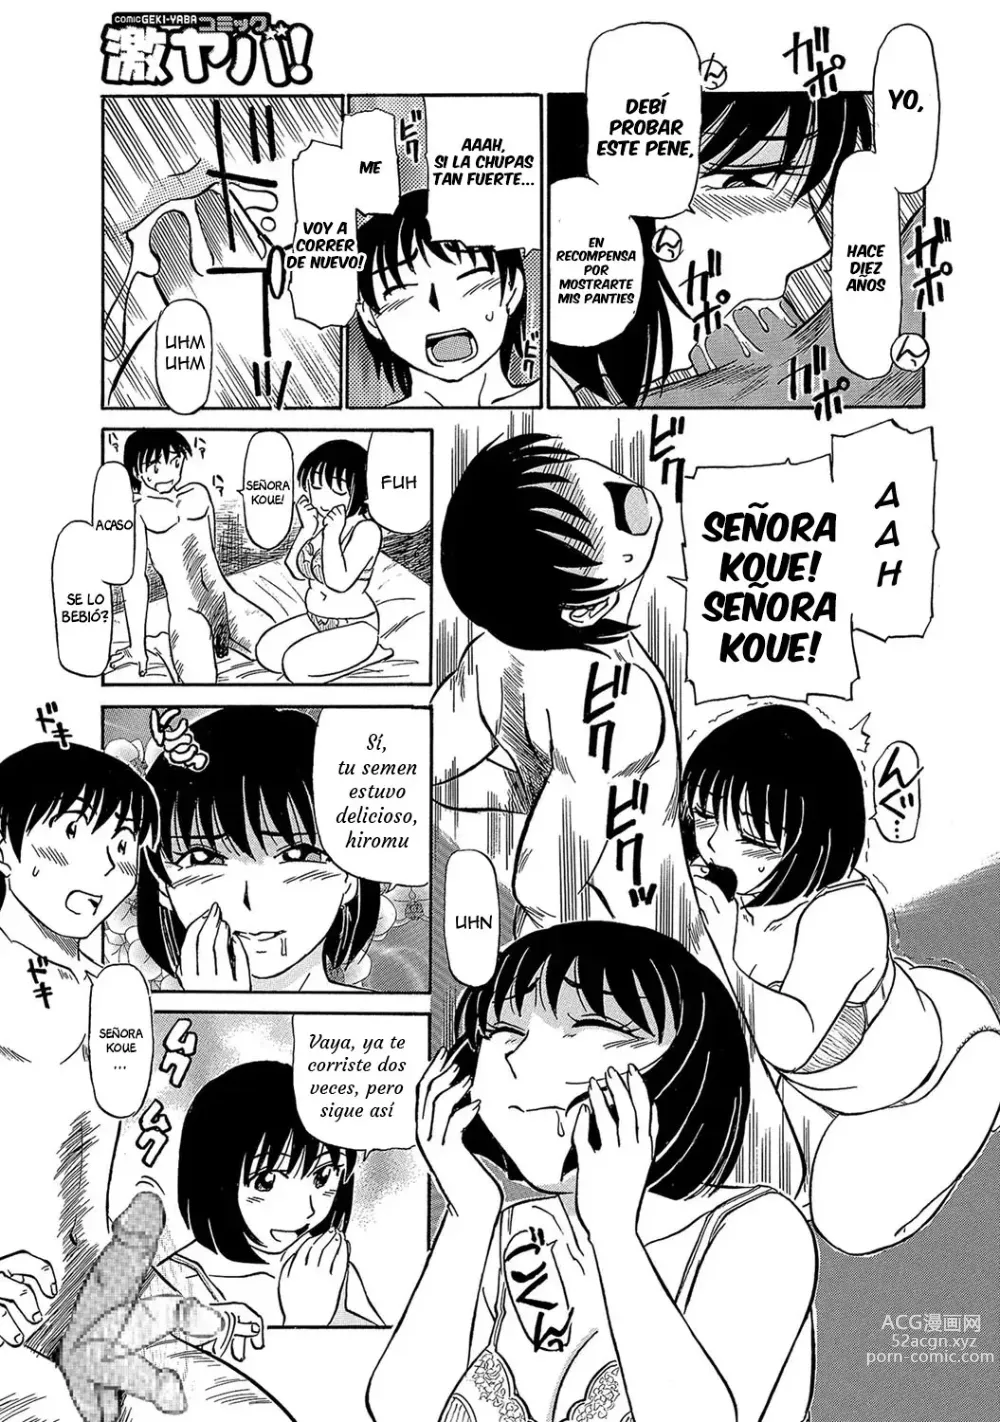 Page 13 of manga Inside Koue's Panties